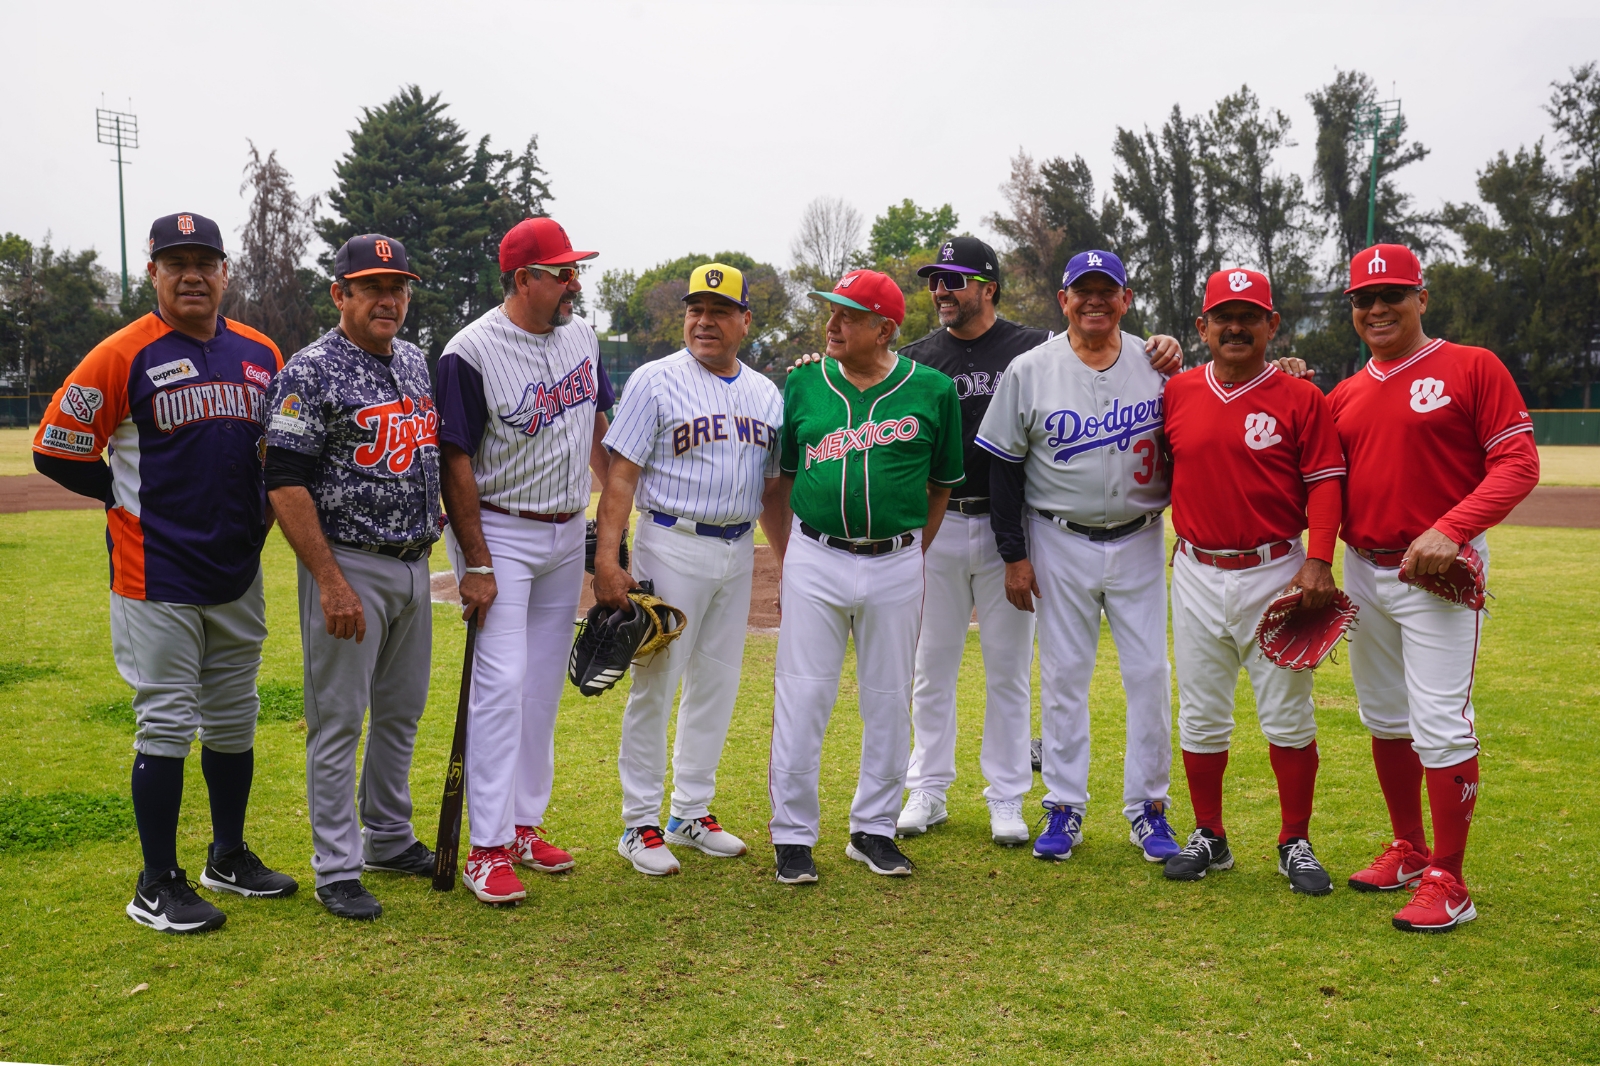 AMLO comparte juego de beisbol con Fernando 'Toro' Valenzuela y otras leyendas